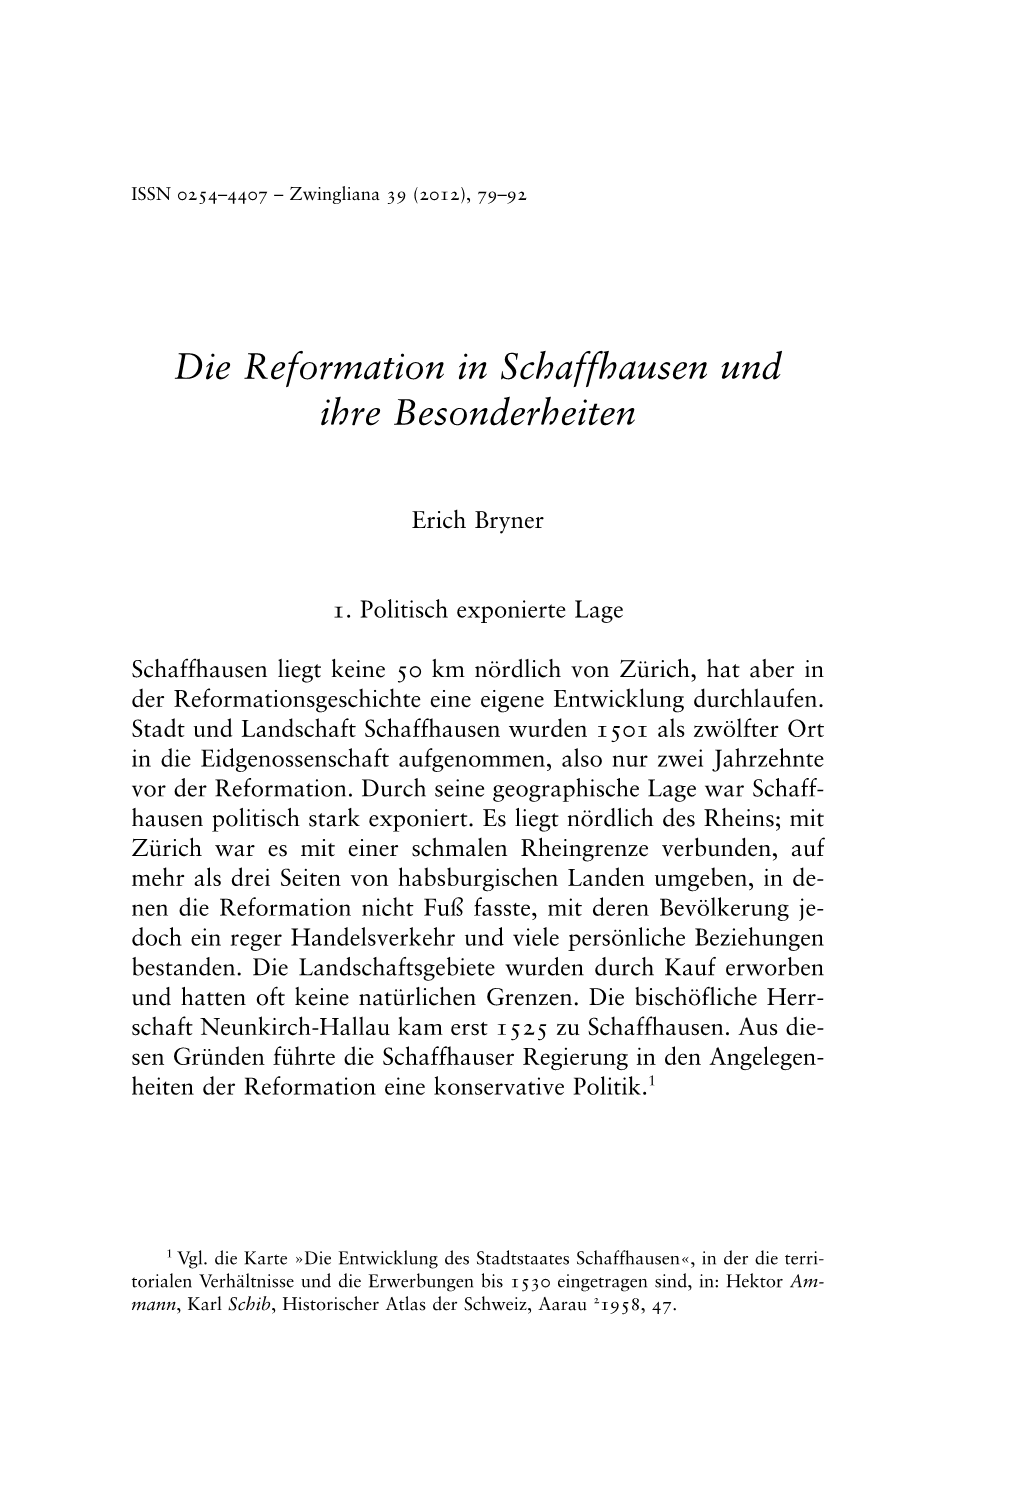 Die Reformation in Schaffhausen Und Ihre Besonderheiten